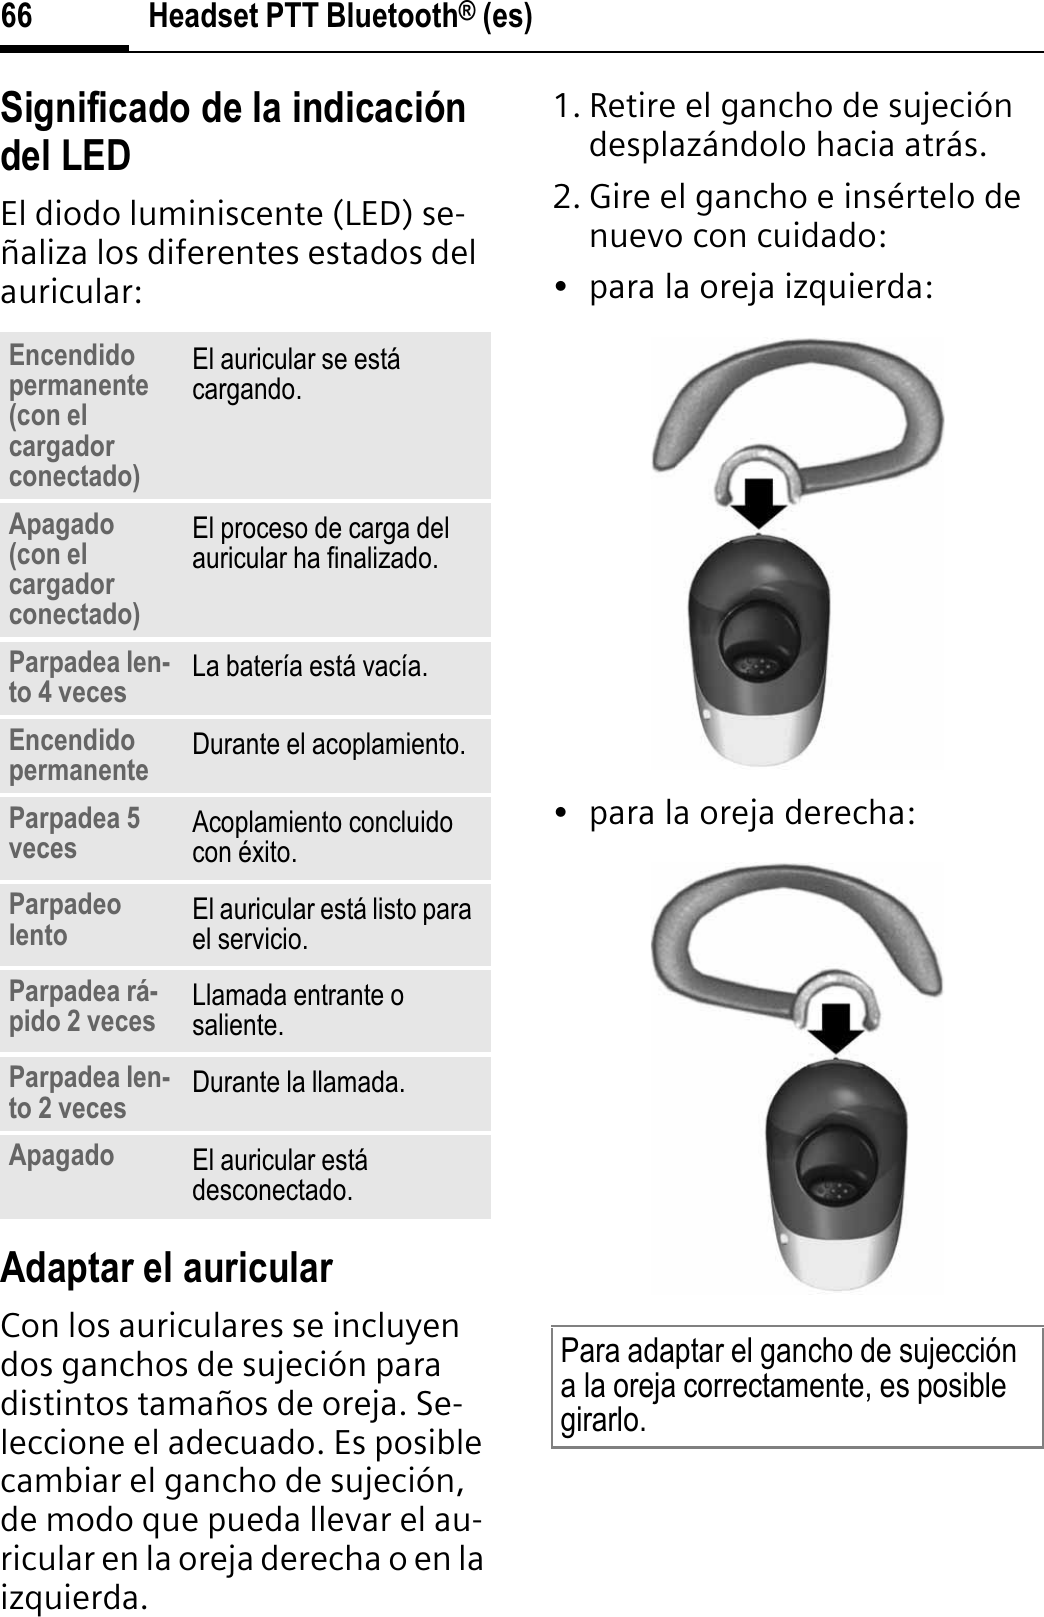 Headset PTT Bluetooth® (es)66Significado de la indicación del LEDEl diodo luminiscente (LED) se-ñaliza los diferentes estados del auricular:Adaptar el auricularCon los auriculares se incluyen dos ganchos de sujeción para distintos tamaños de oreja. Se-leccione el adecuado. Es posible cambiar el gancho de sujeción, de modo que pueda llevar el au-ricular en la oreja derecha o en la izquierda. 1. Retire el gancho de sujeción desplazándolo hacia atrás.2. Gire el gancho e insértelo de nuevo con cuidado:• para la oreja izquierda:• para la oreja derecha:Encendido permanente (con el cargador conectado)El auricular se está cargando.Apagado (con el cargador conectado)El proceso de carga del auricular ha finalizado.Parpadea len-to 4 veces La batería está vacía.Encendido permanente Durante el acoplamiento.Parpadea 5 veces Acoplamiento concluido con éxito.Parpadeo lento El auricular está listo para el servicio.Parpadea rá-pido 2 veces Llamada entrante o saliente.Parpadea len-to 2 veces Durante la llamada.Apagado El auricular está desconectado.Para adaptar el gancho de sujección a la oreja correctamente, es posible girarlo.